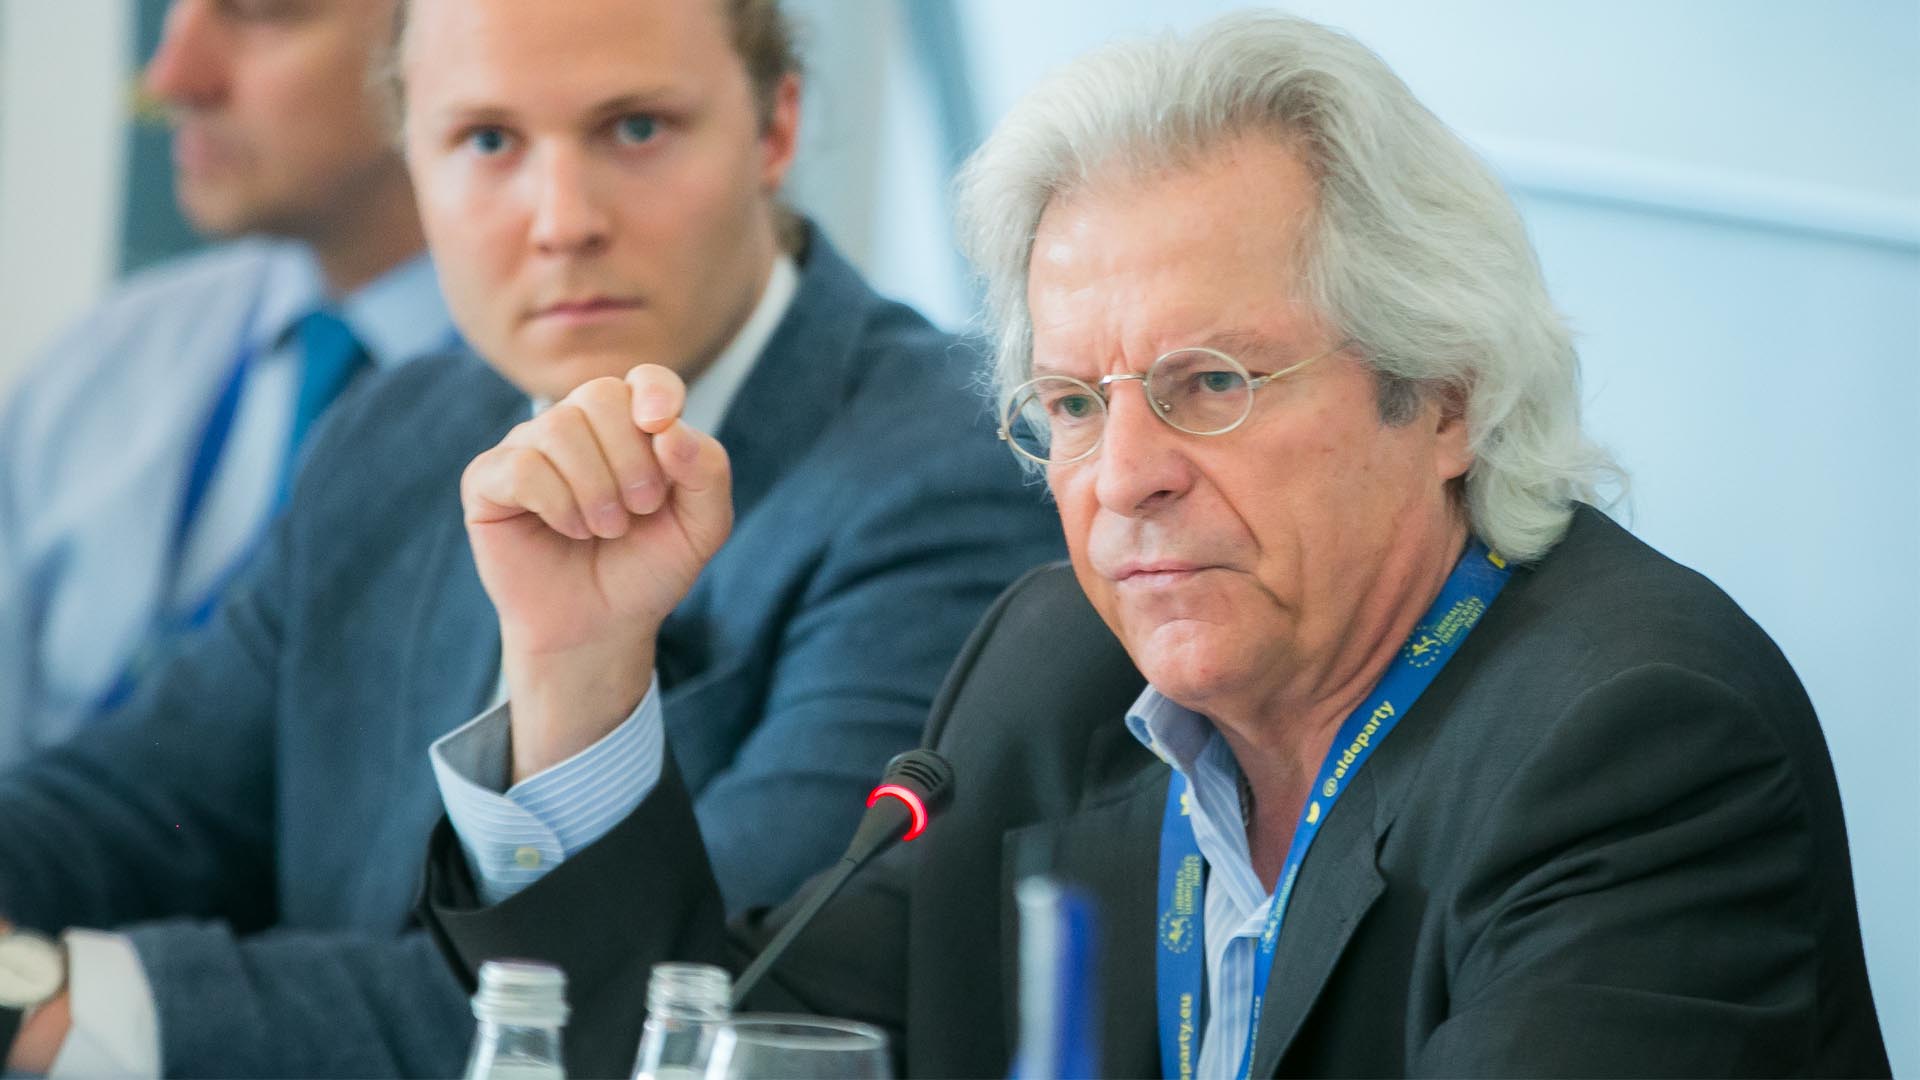 El eurodiputado Javier Nart abandona Ciudadanos aunque no renuncia a su escaño